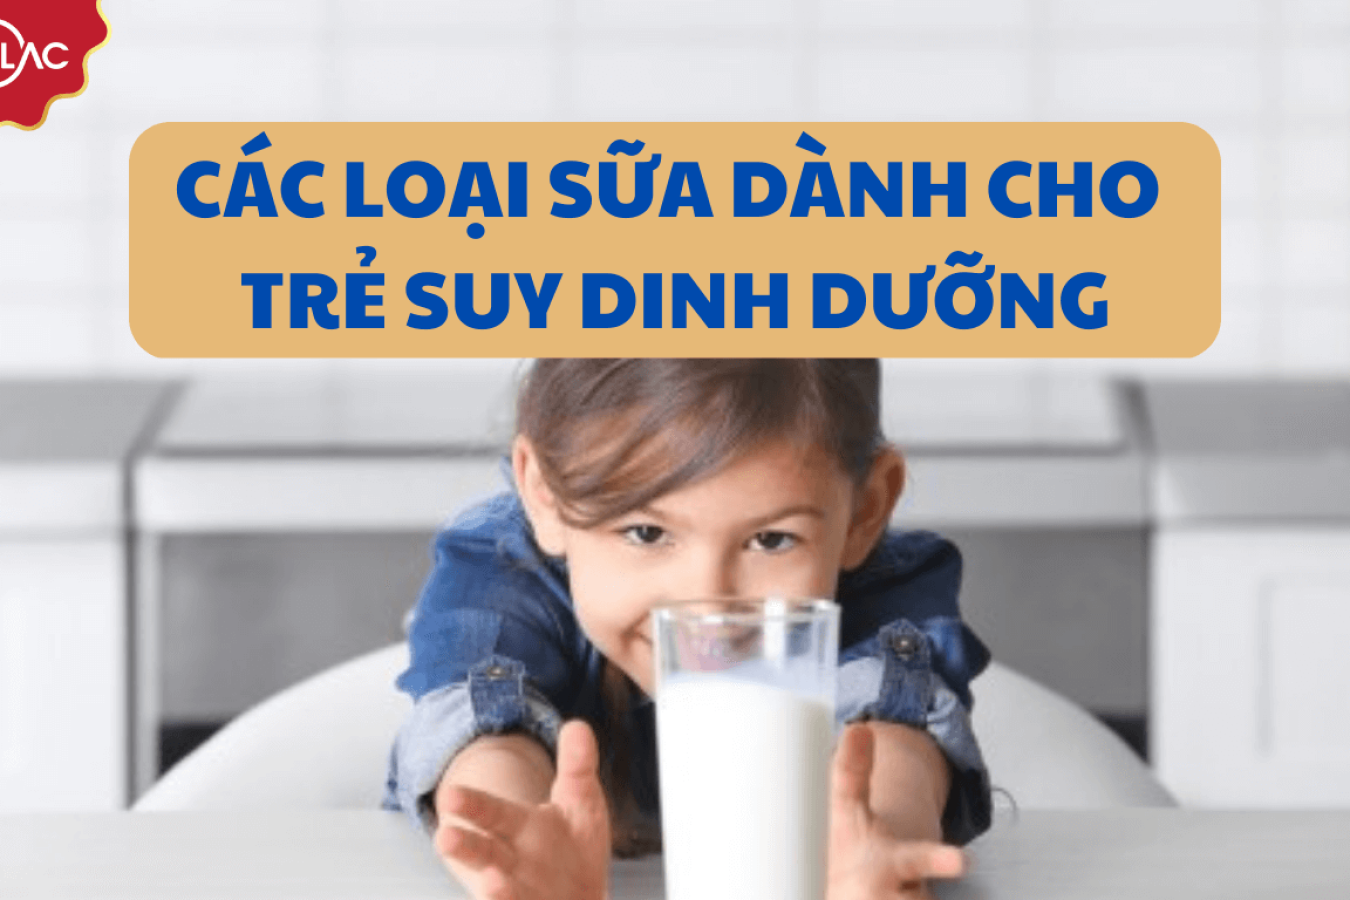 Tổng hợp các loại sữa dành cho trẻ suy dinh dưỡng tốt 2023